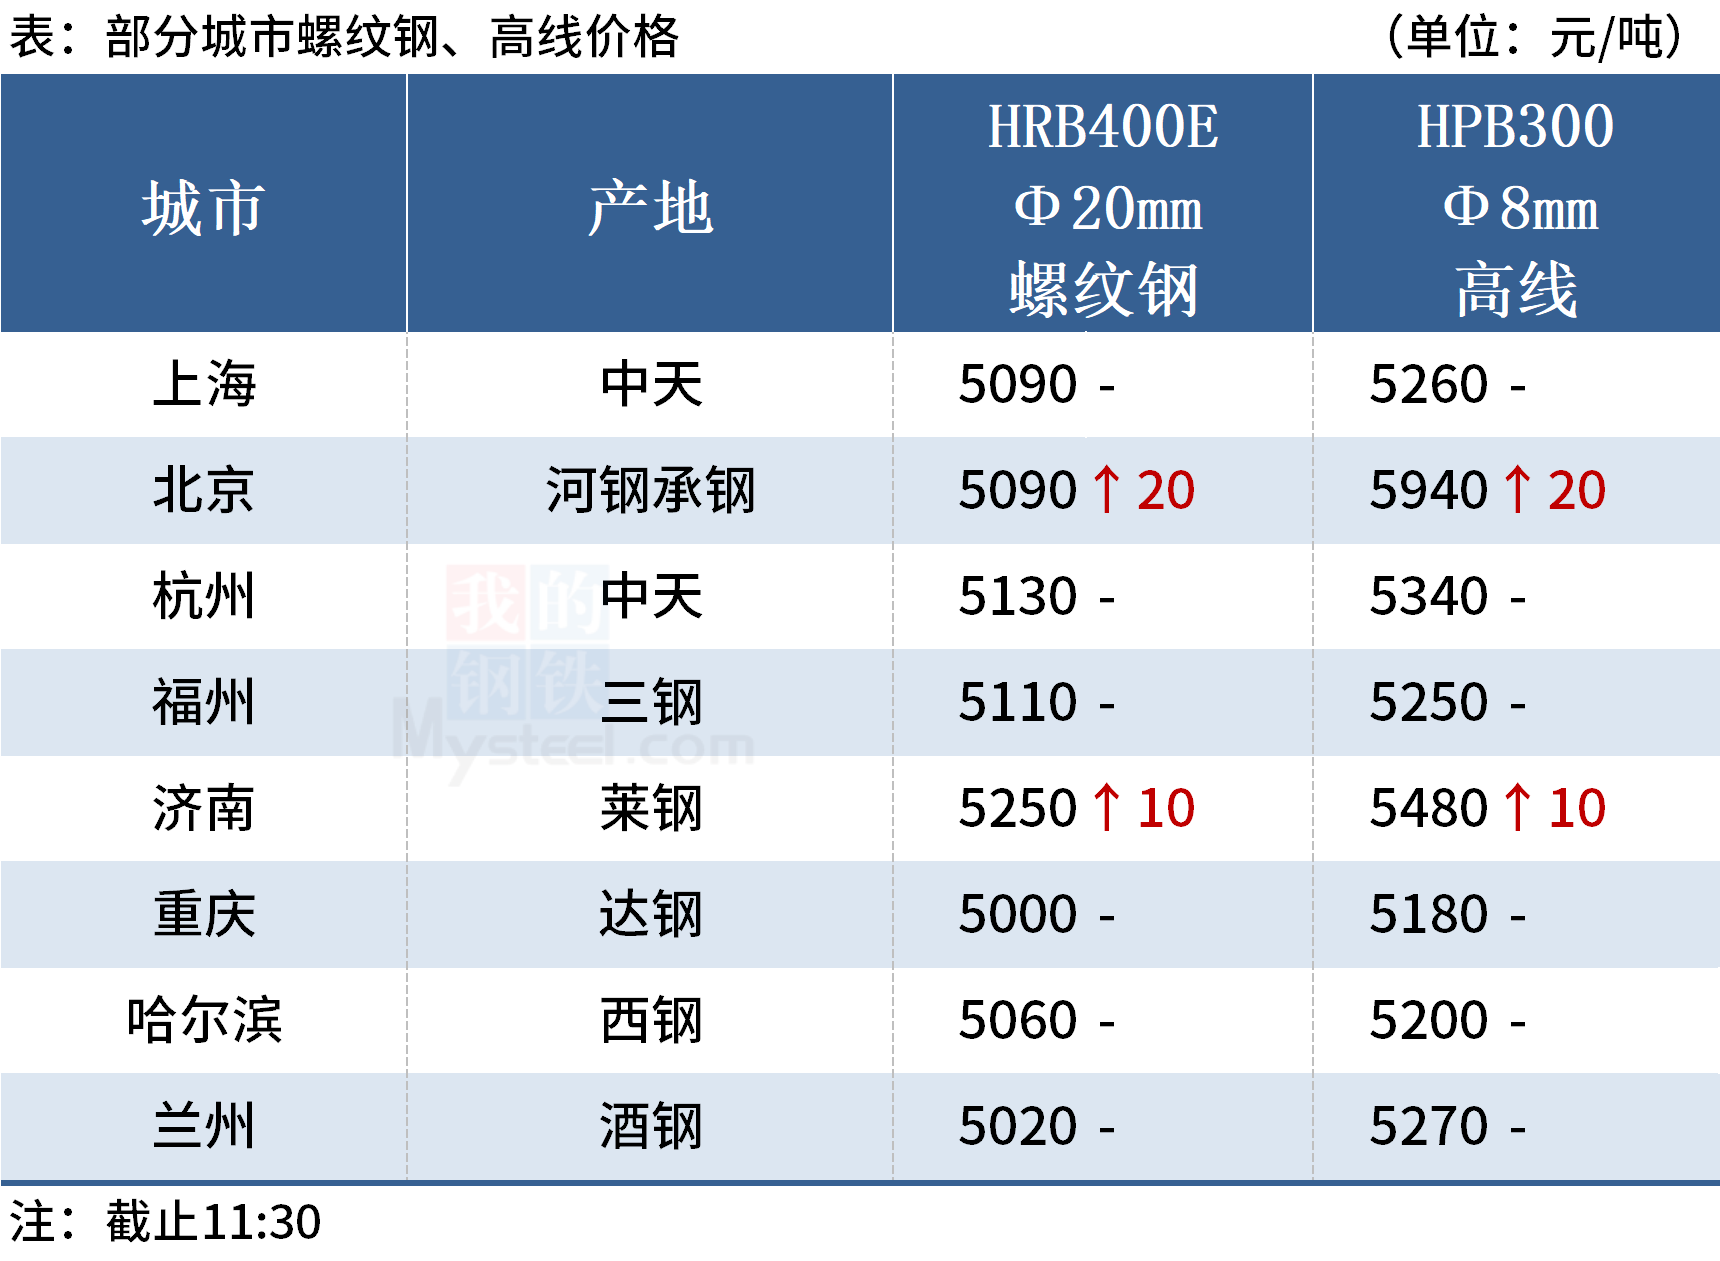  ◎上海：19日早盘建材市场价格暂稳平盘